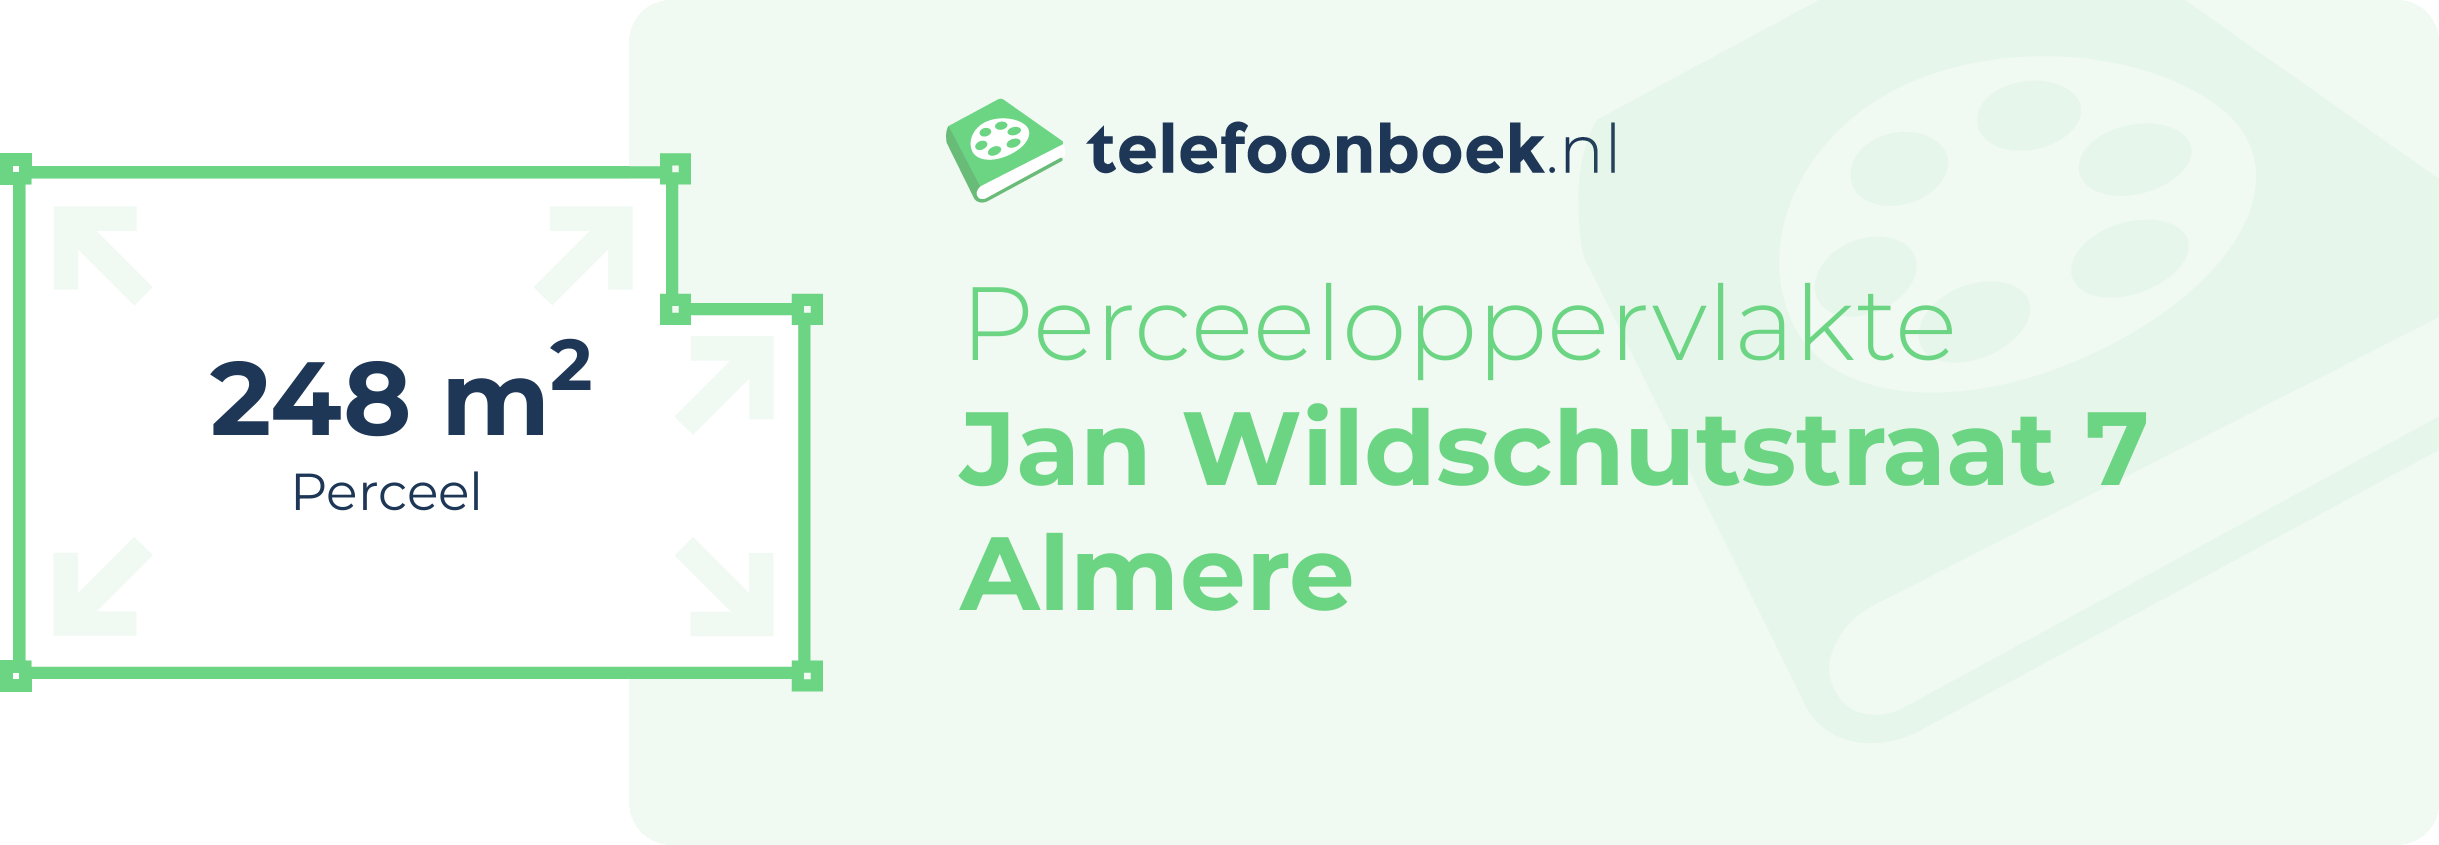 Perceeloppervlakte Jan Wildschutstraat 7 Almere